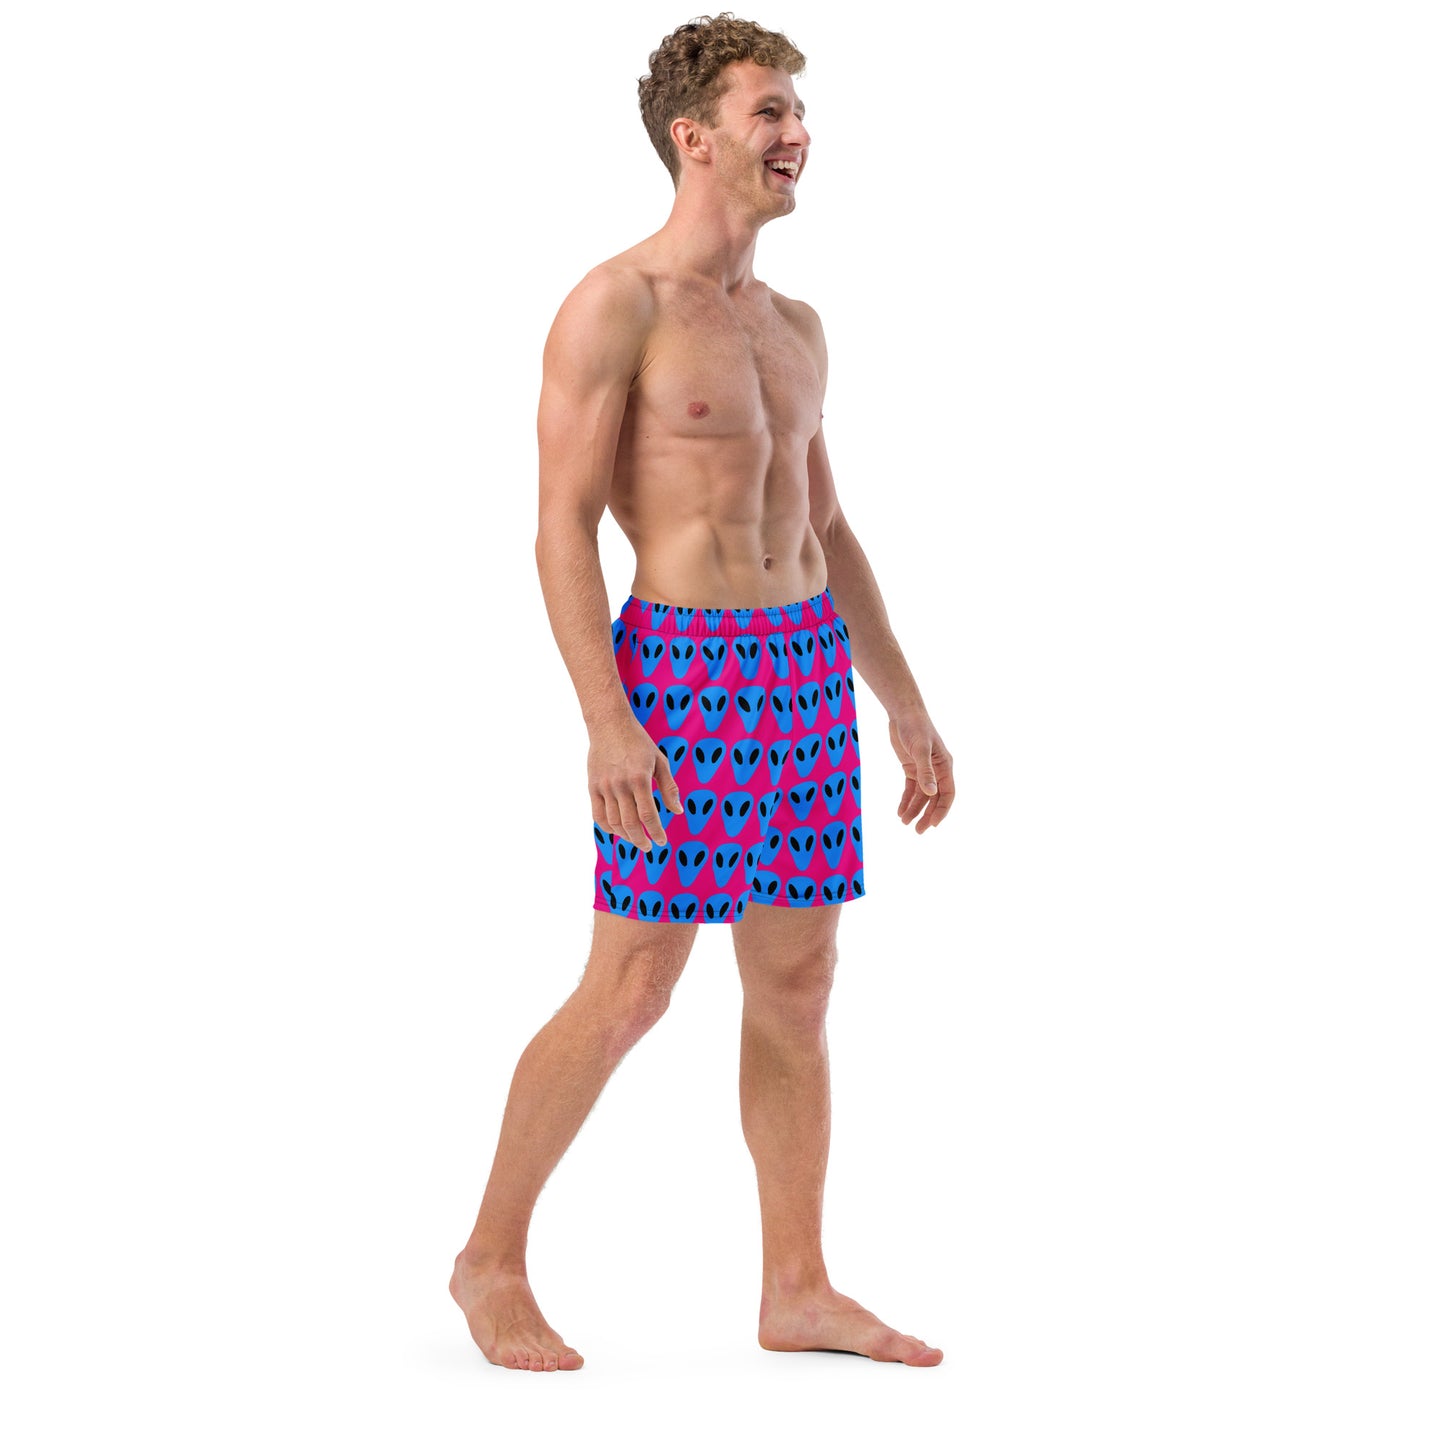 Blue Alien Men's Hot Pink swim trunks